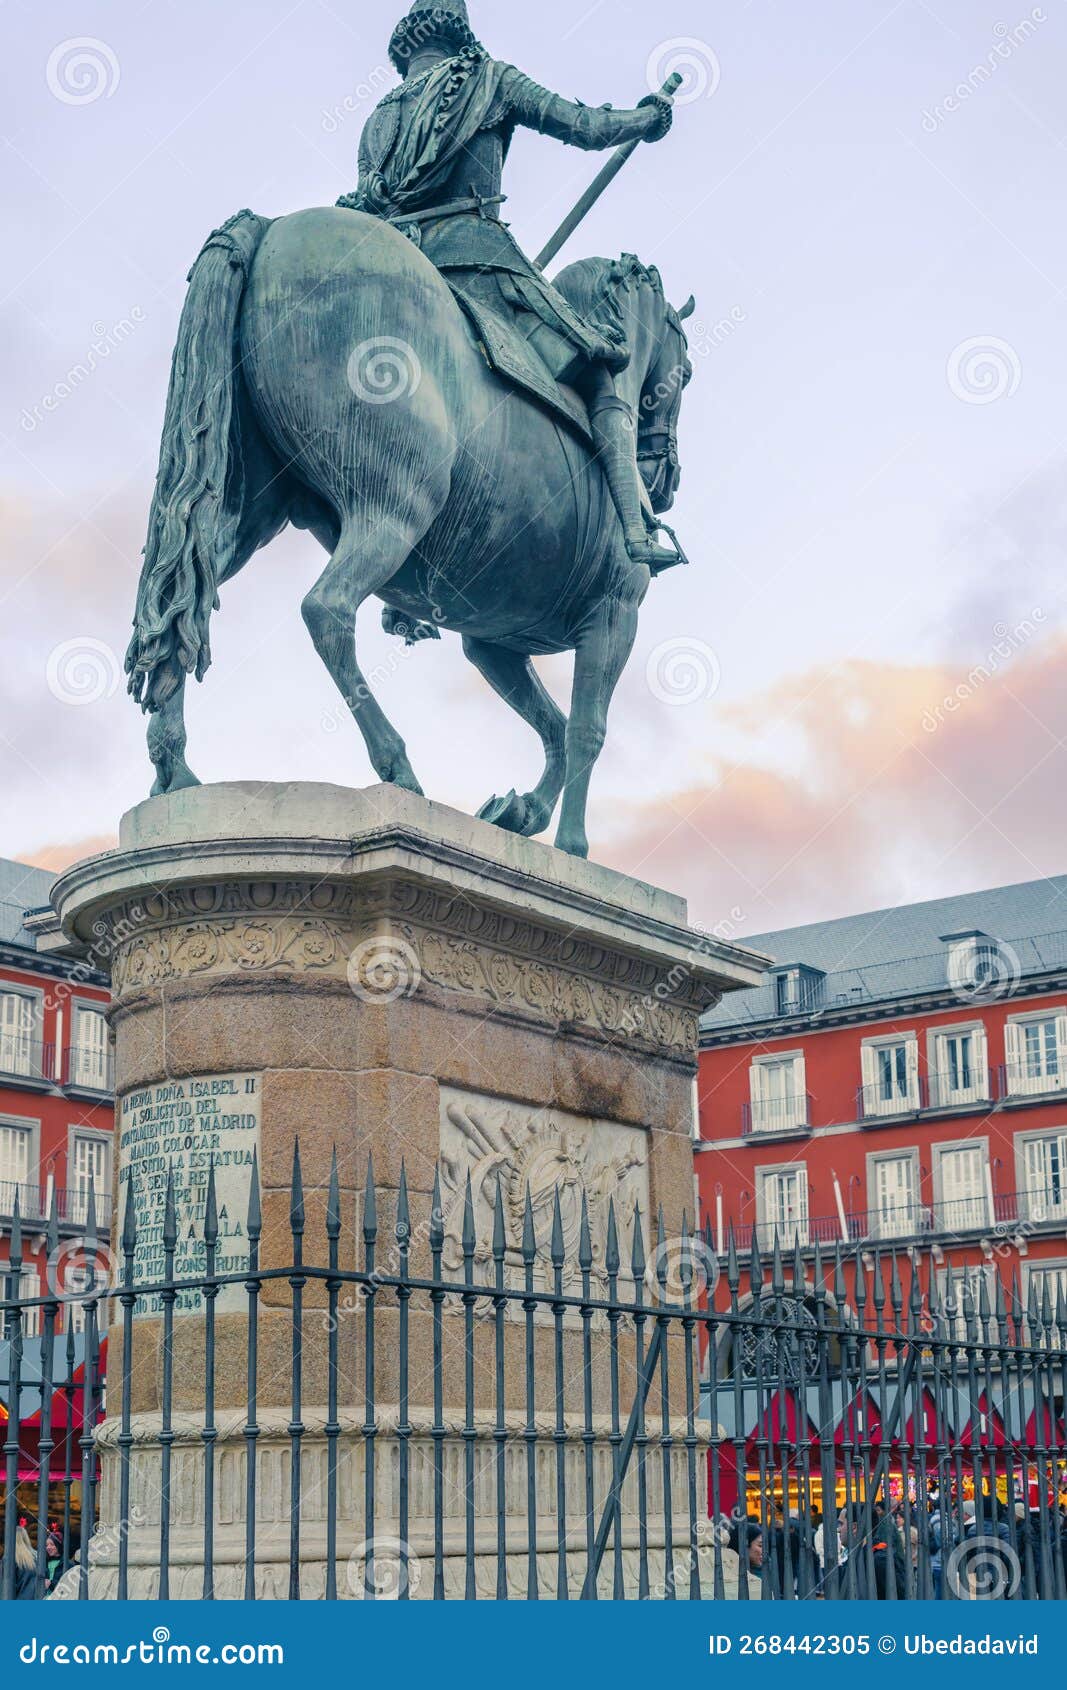 estatua de felipe iii en la plaza mayor de madrid